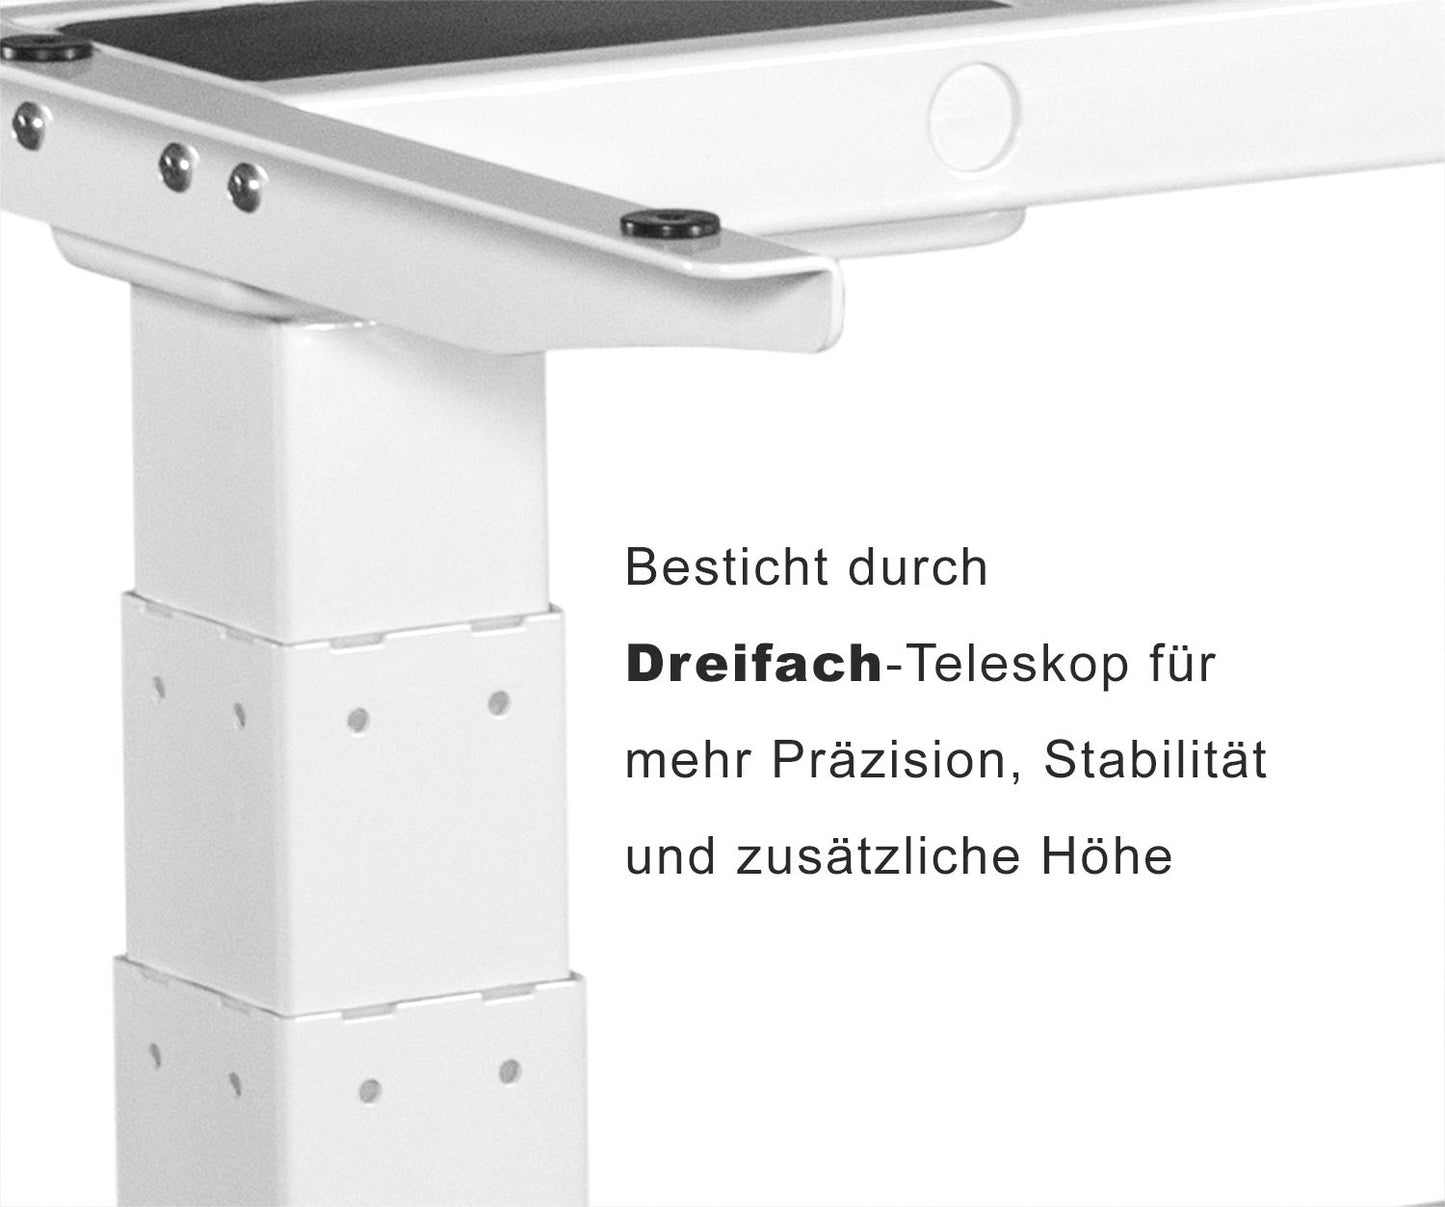 Spar-Bundle ergoSMARTPLUS weiss + Tischplatte weiss 150x75x2,5cm